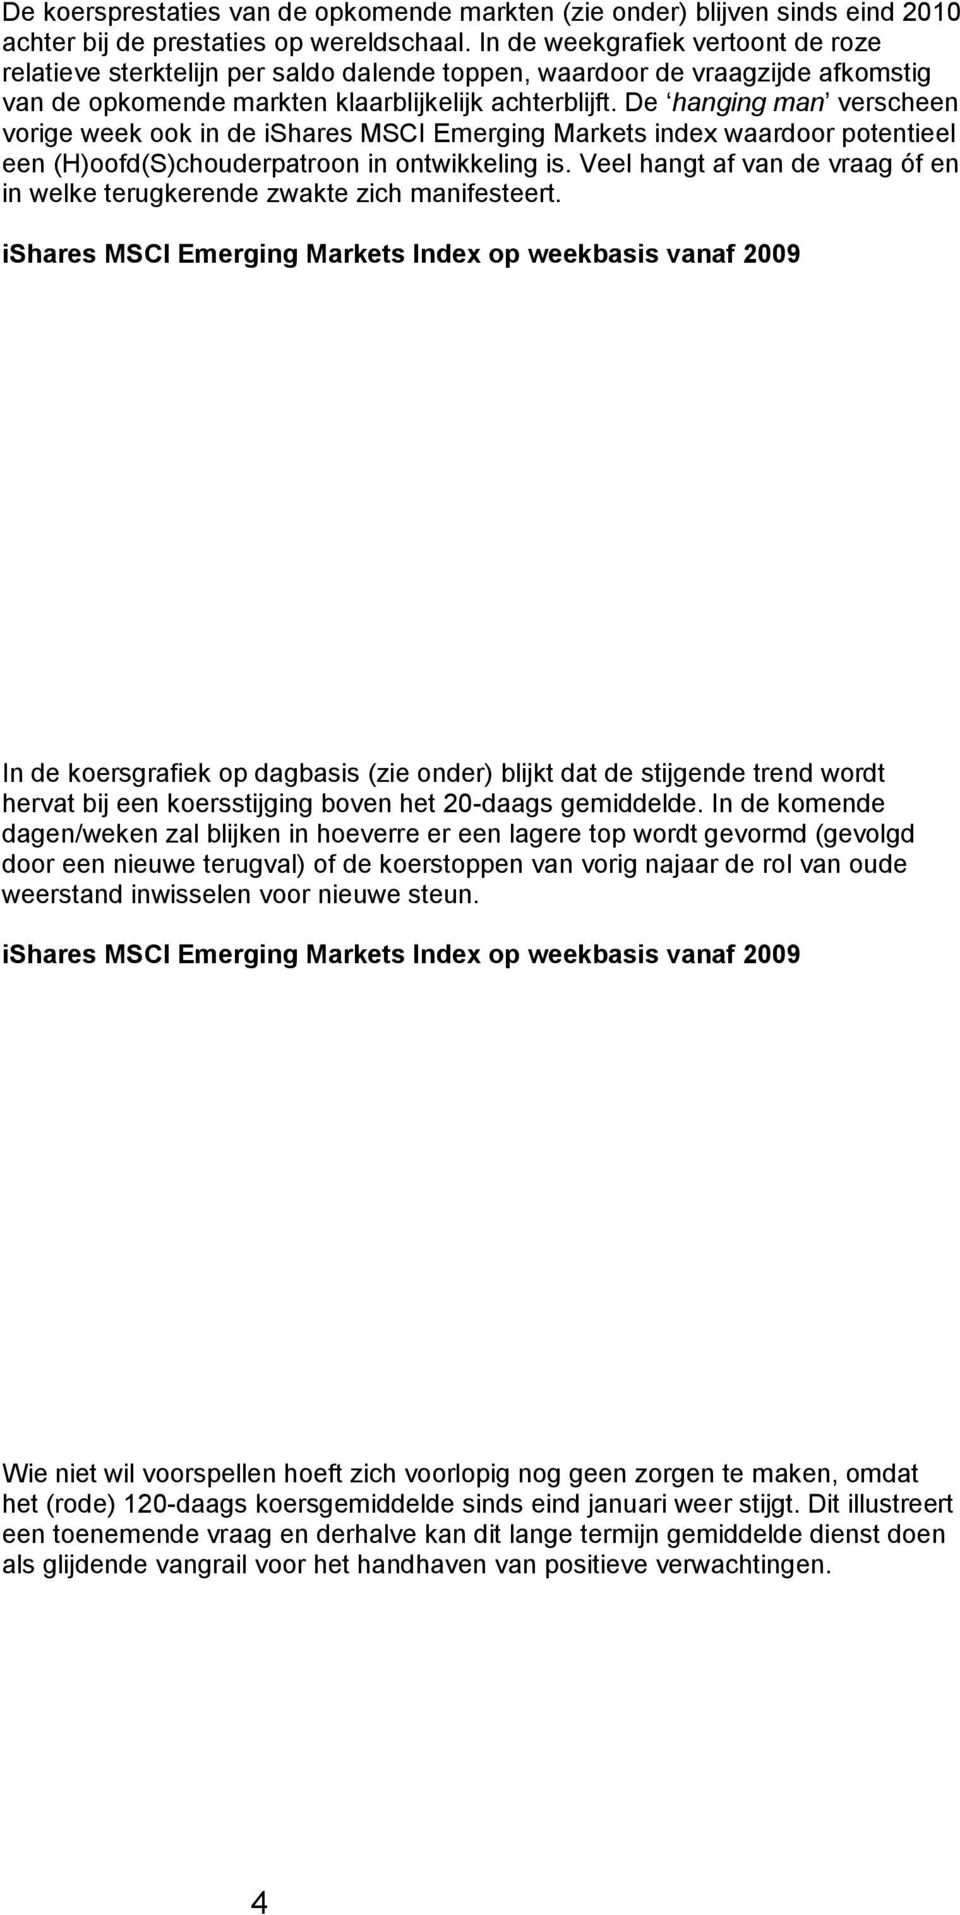 De hanging man verscheen vorige week ook in de ishares MSCI Emerging Markets index waardoor potentieel een (H)oofd(S)chouderpatroon in ontwikkeling is.